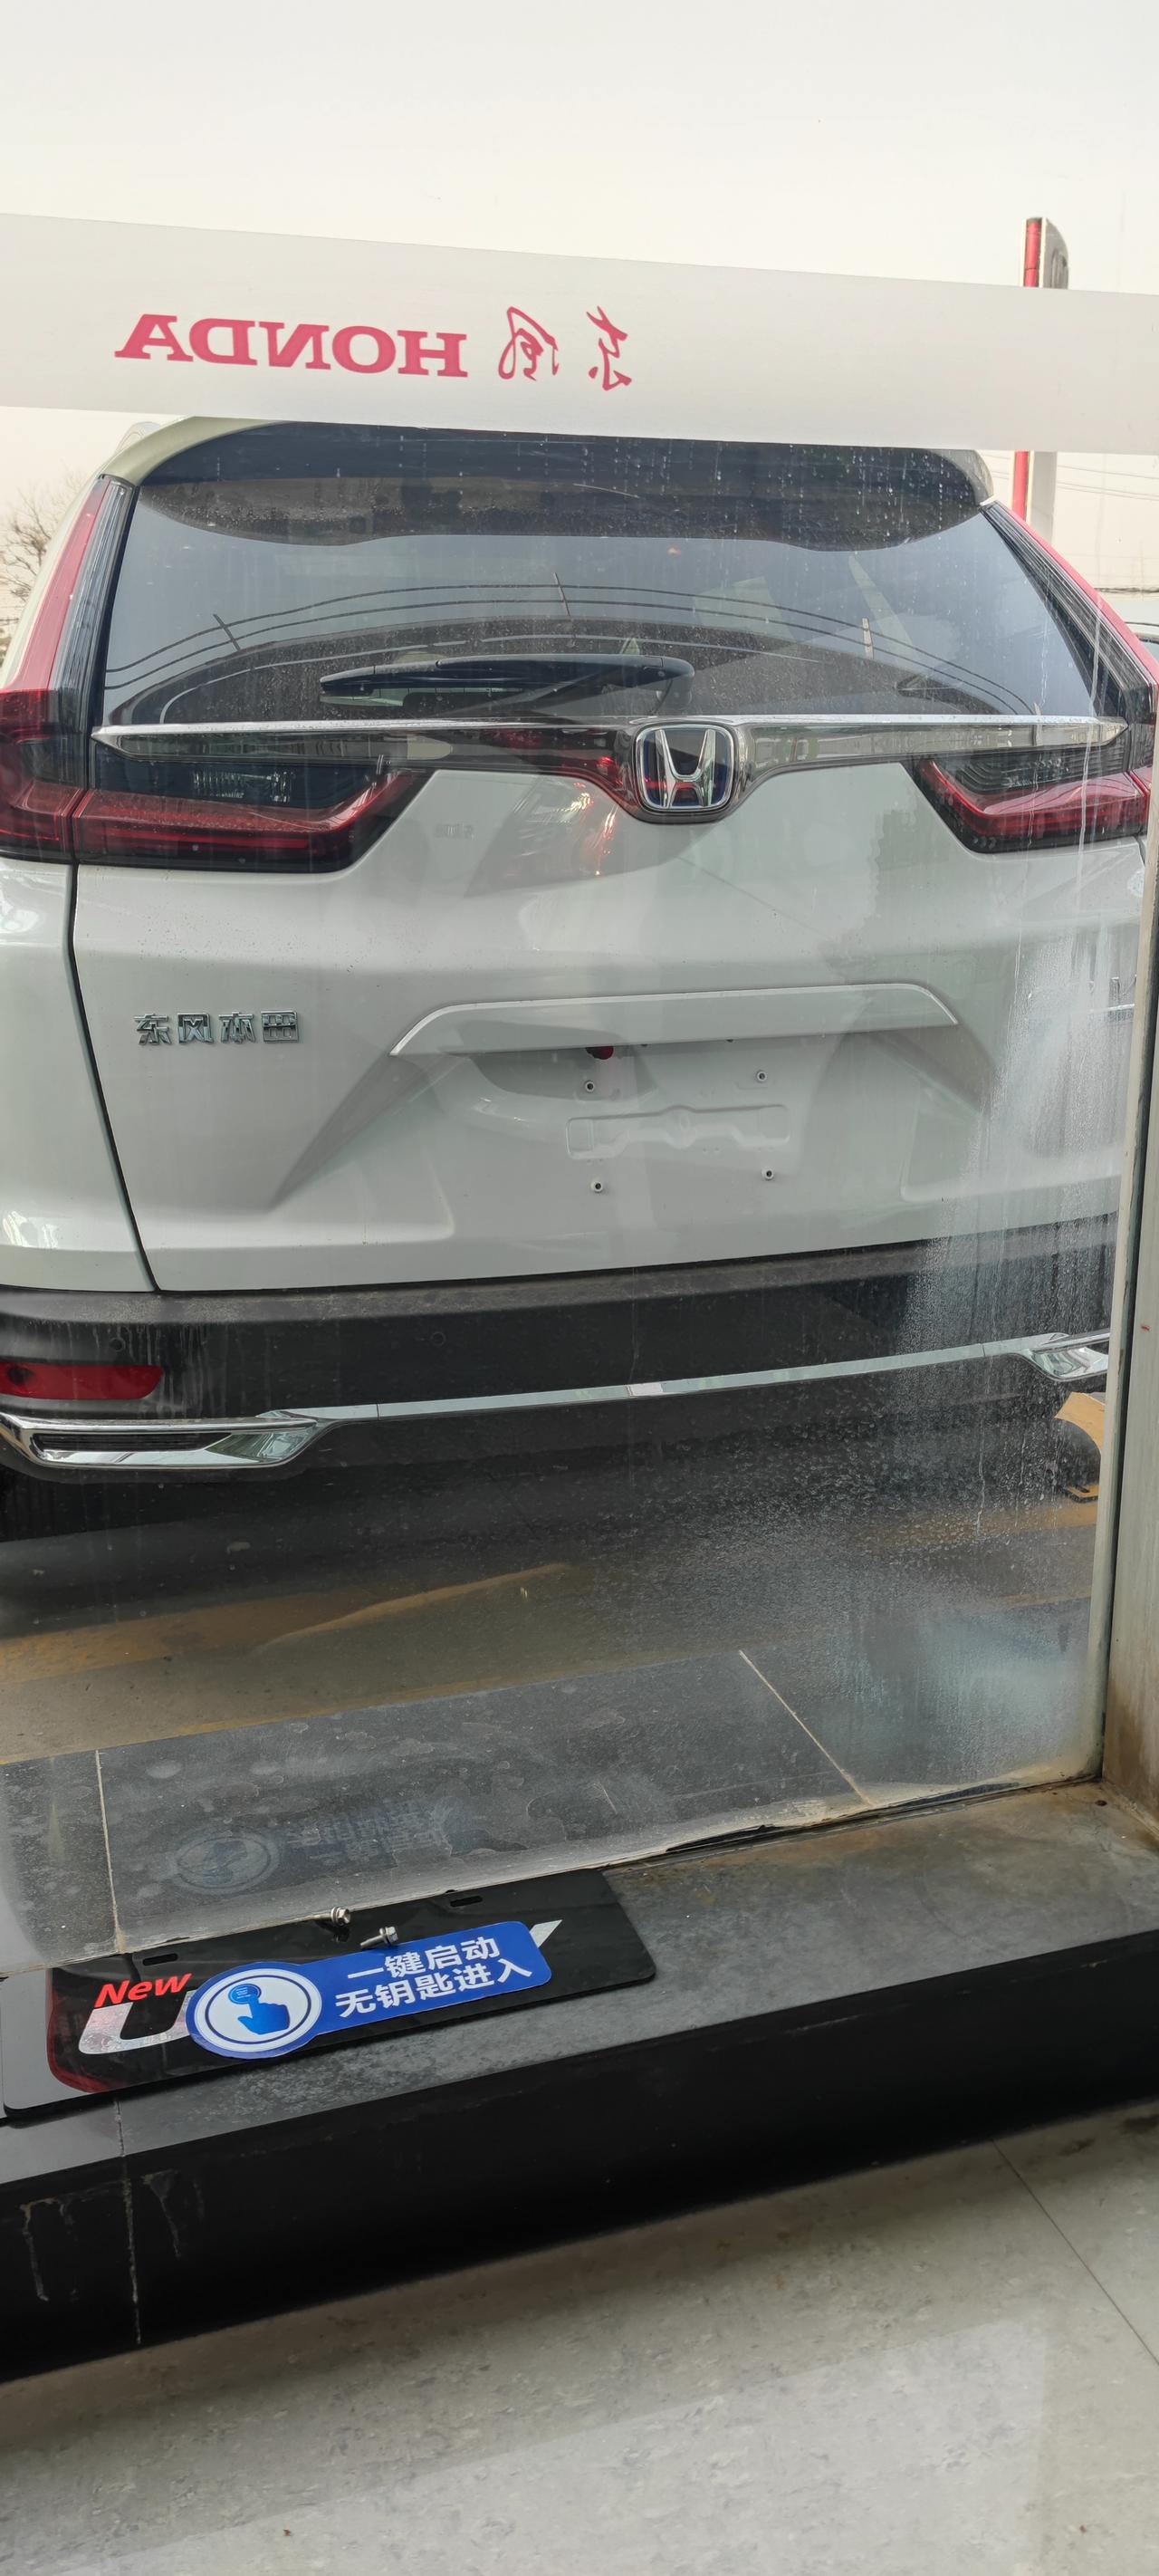 本田CR-V 最近想提混动低配净行版，最近有没大哥们提了这个车的，分享下价格参考下，送了点啥